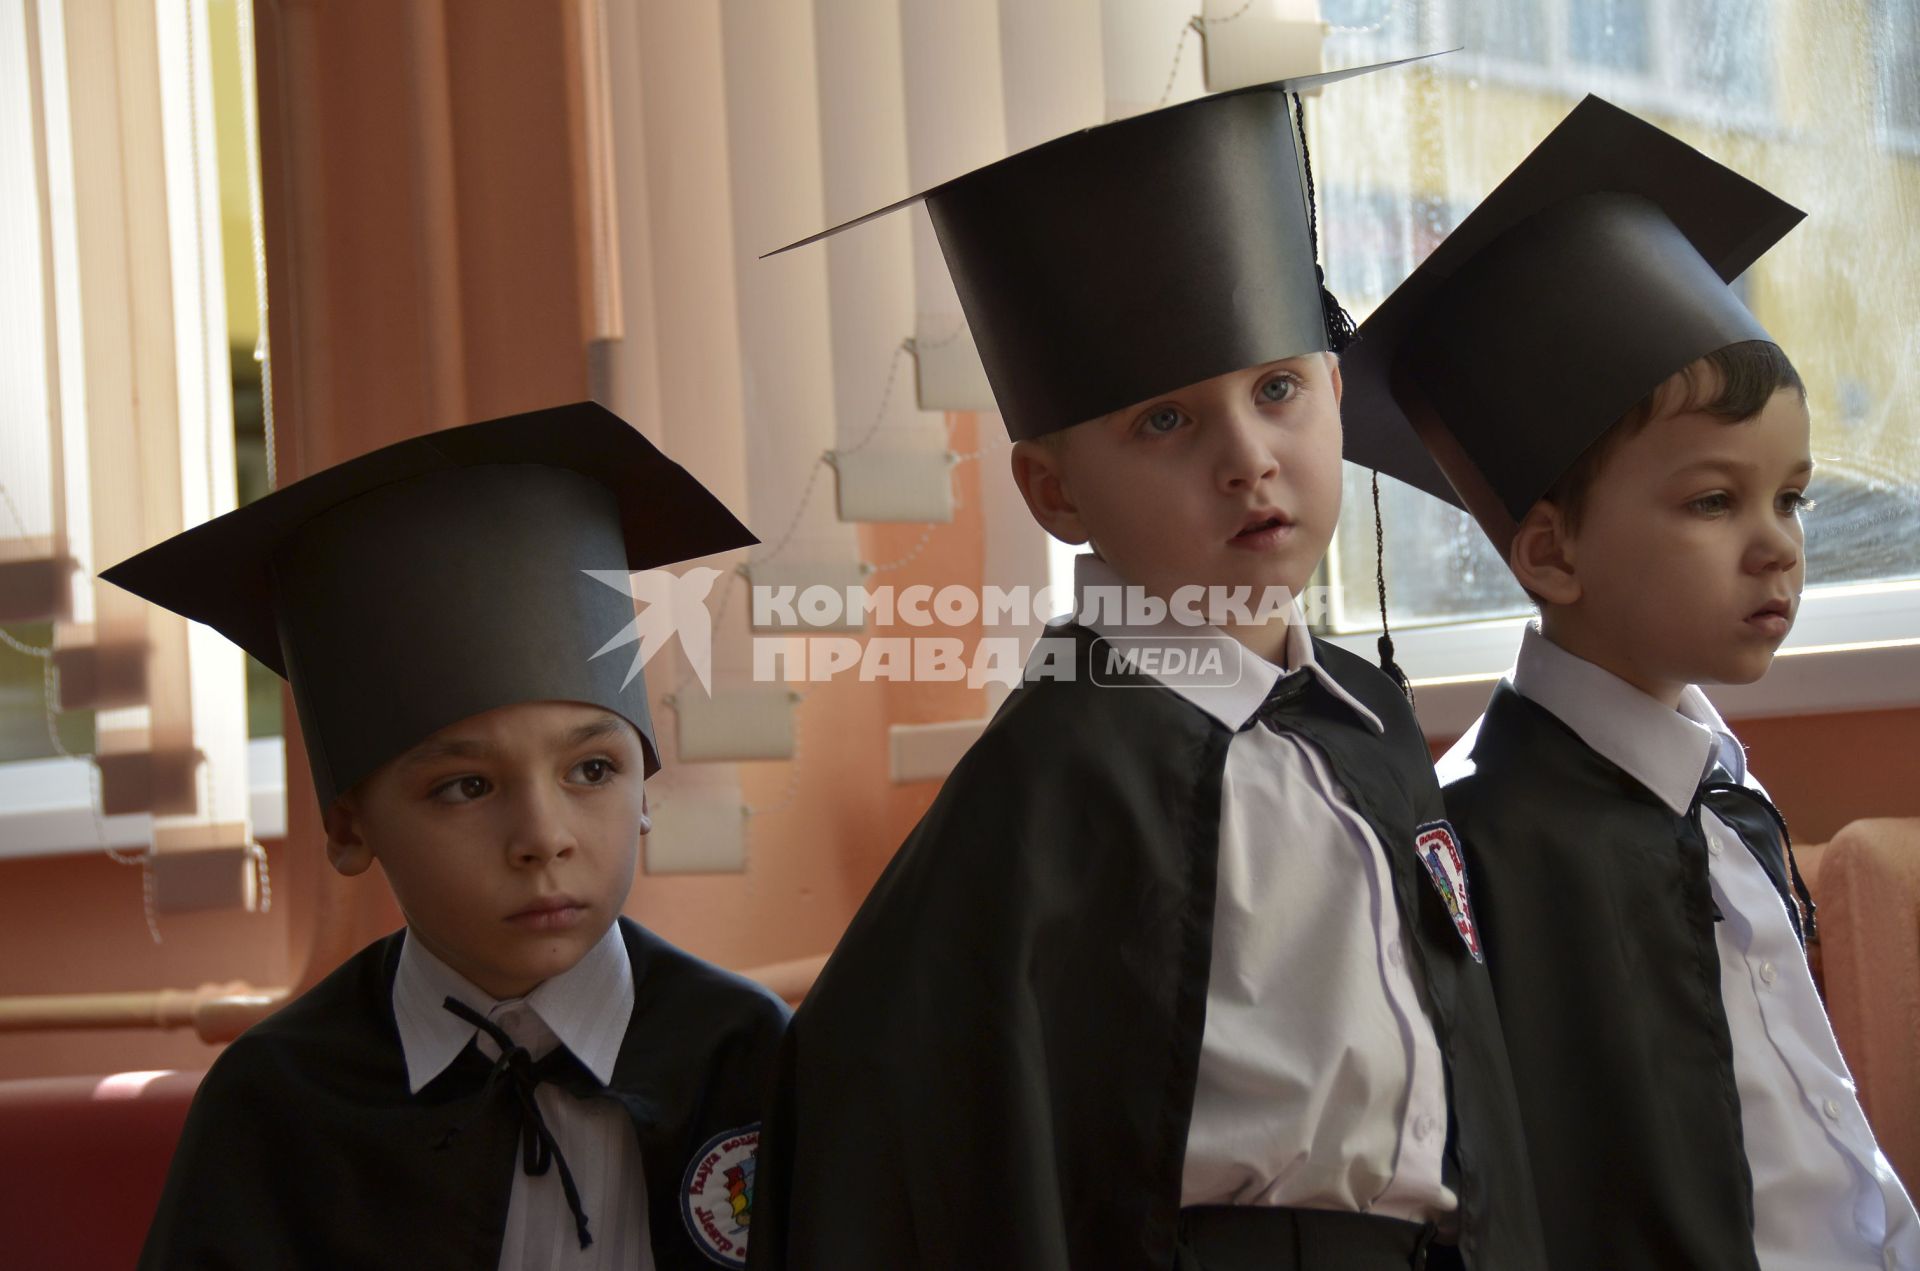 Тула. Ученики первого класса Центра образования #7 в мантии и шапочках  бакалавра.